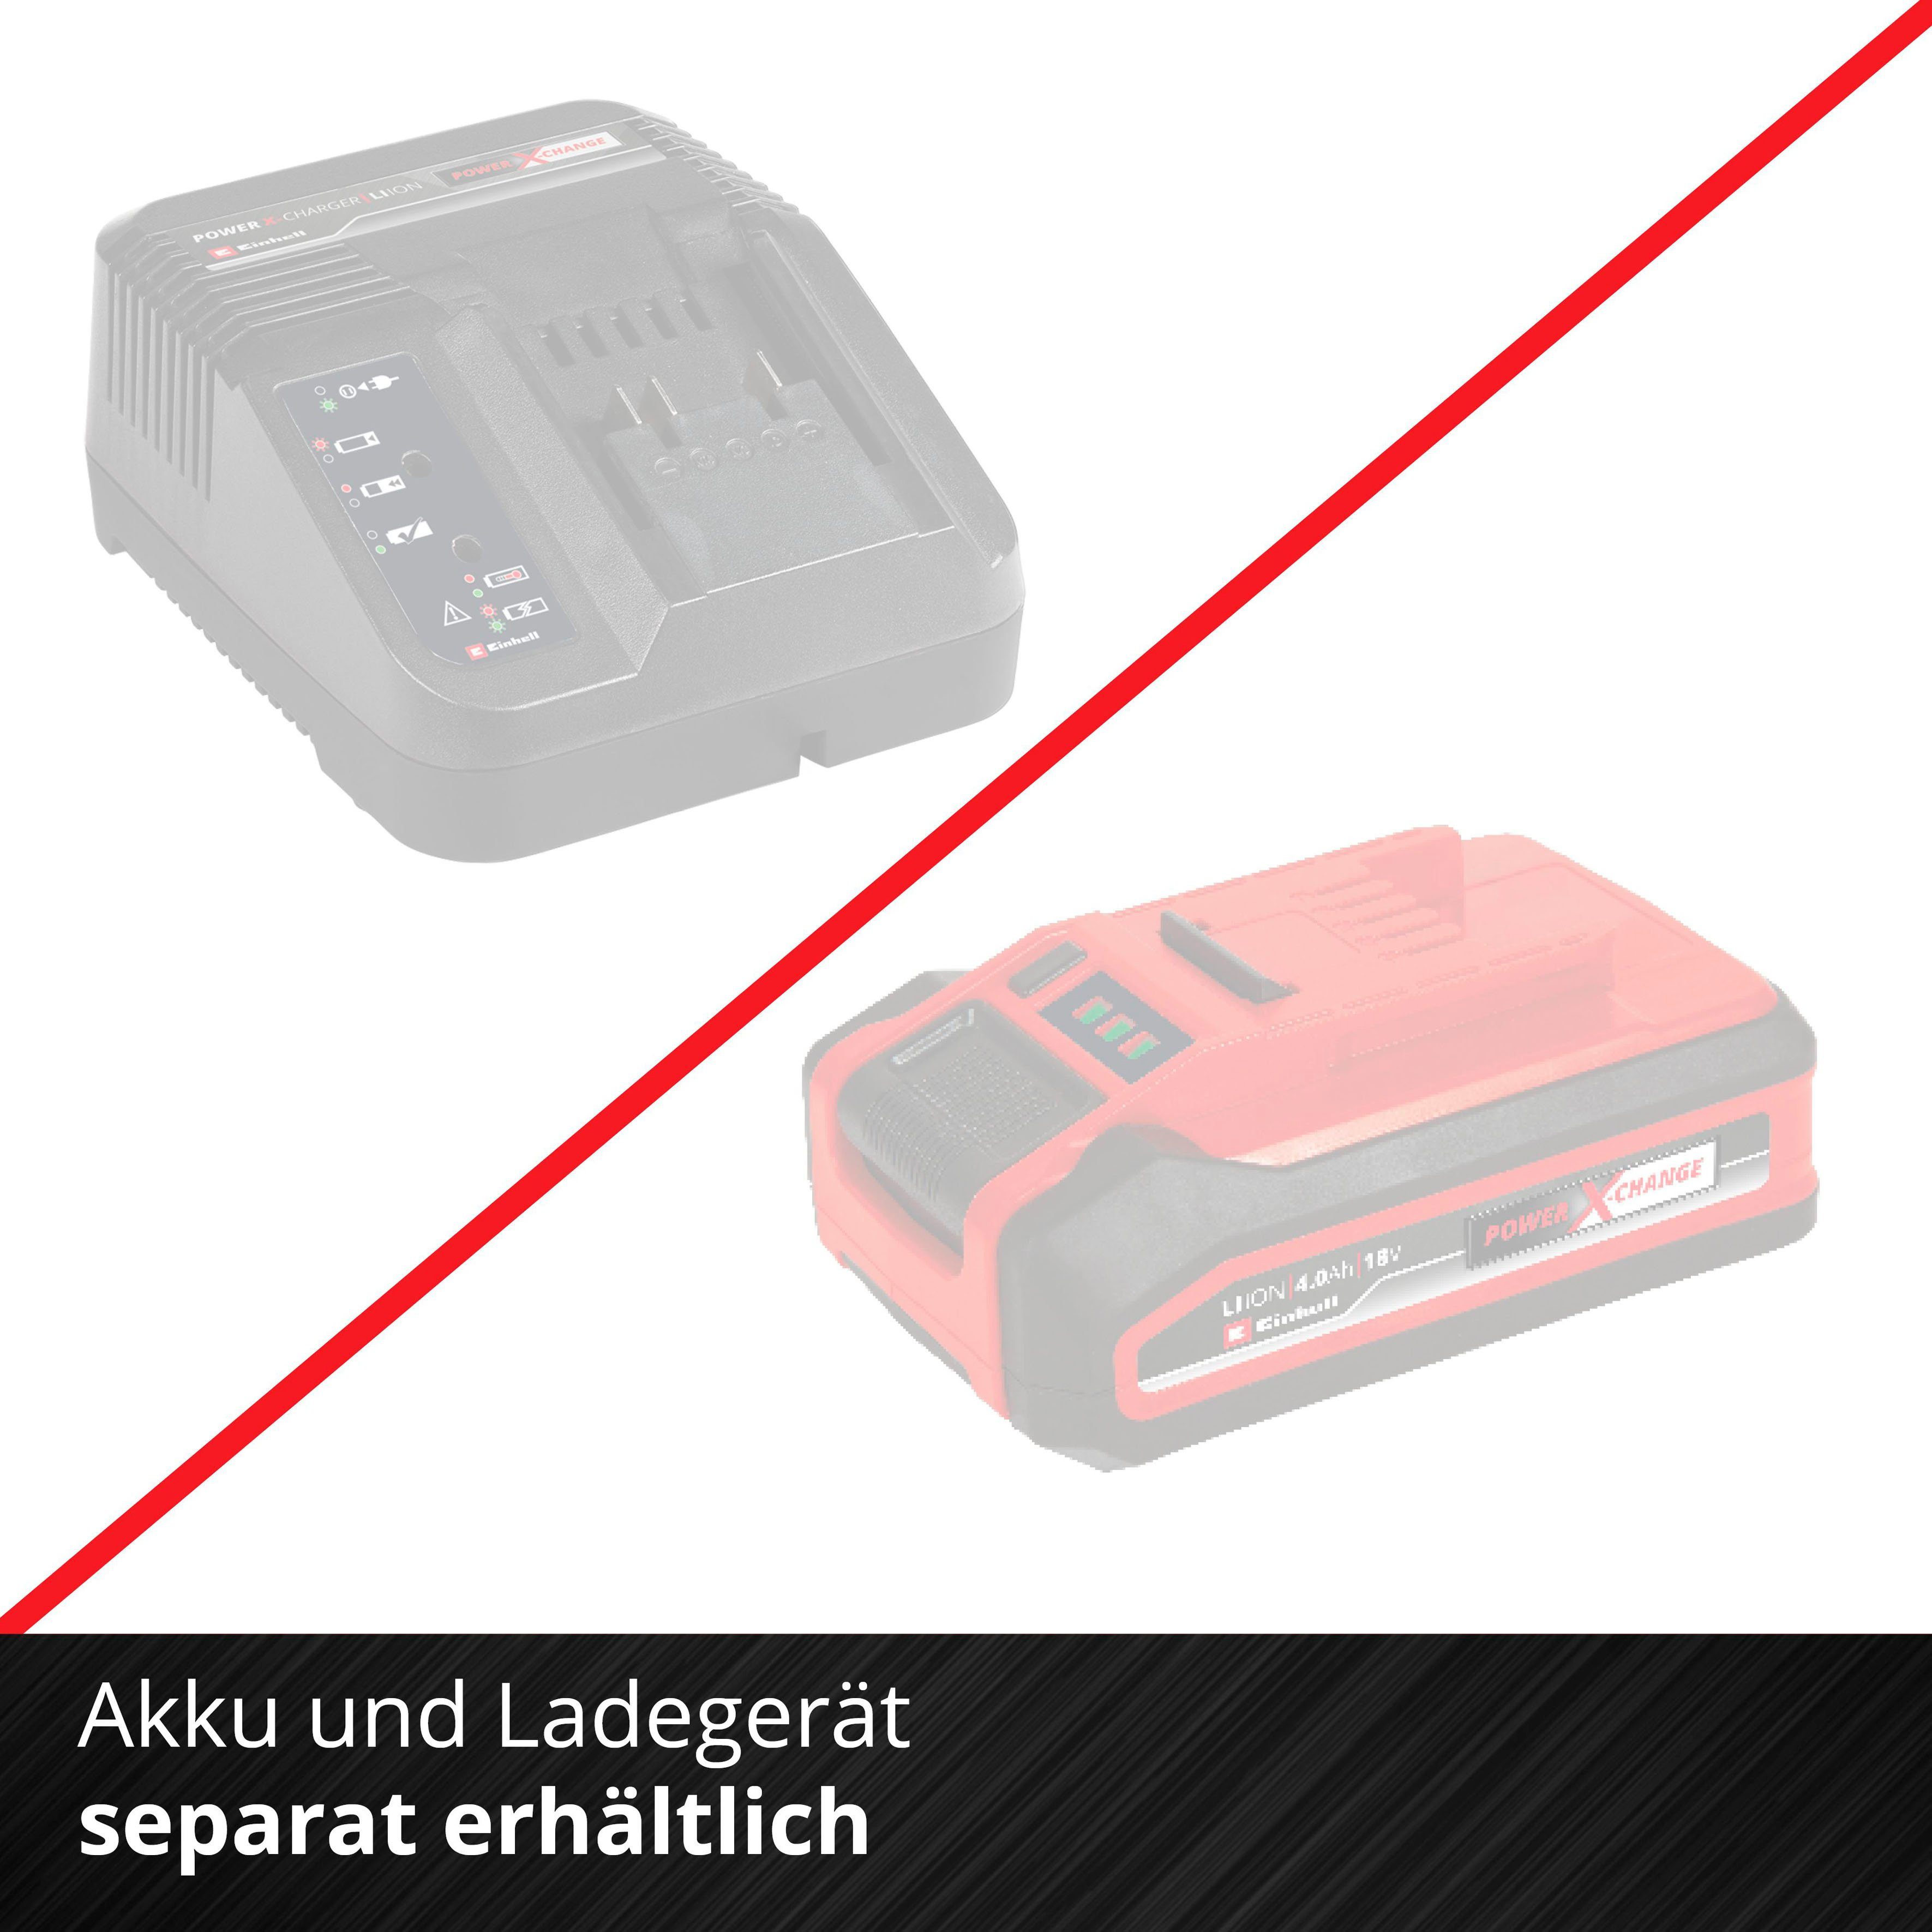 Li Einhell und 2900 Nm, ohne TE-CW 215 Ladegerät Akku 18 Power U/min, Akku-Schlagbohrschrauber X-Change, BL-solo, max.